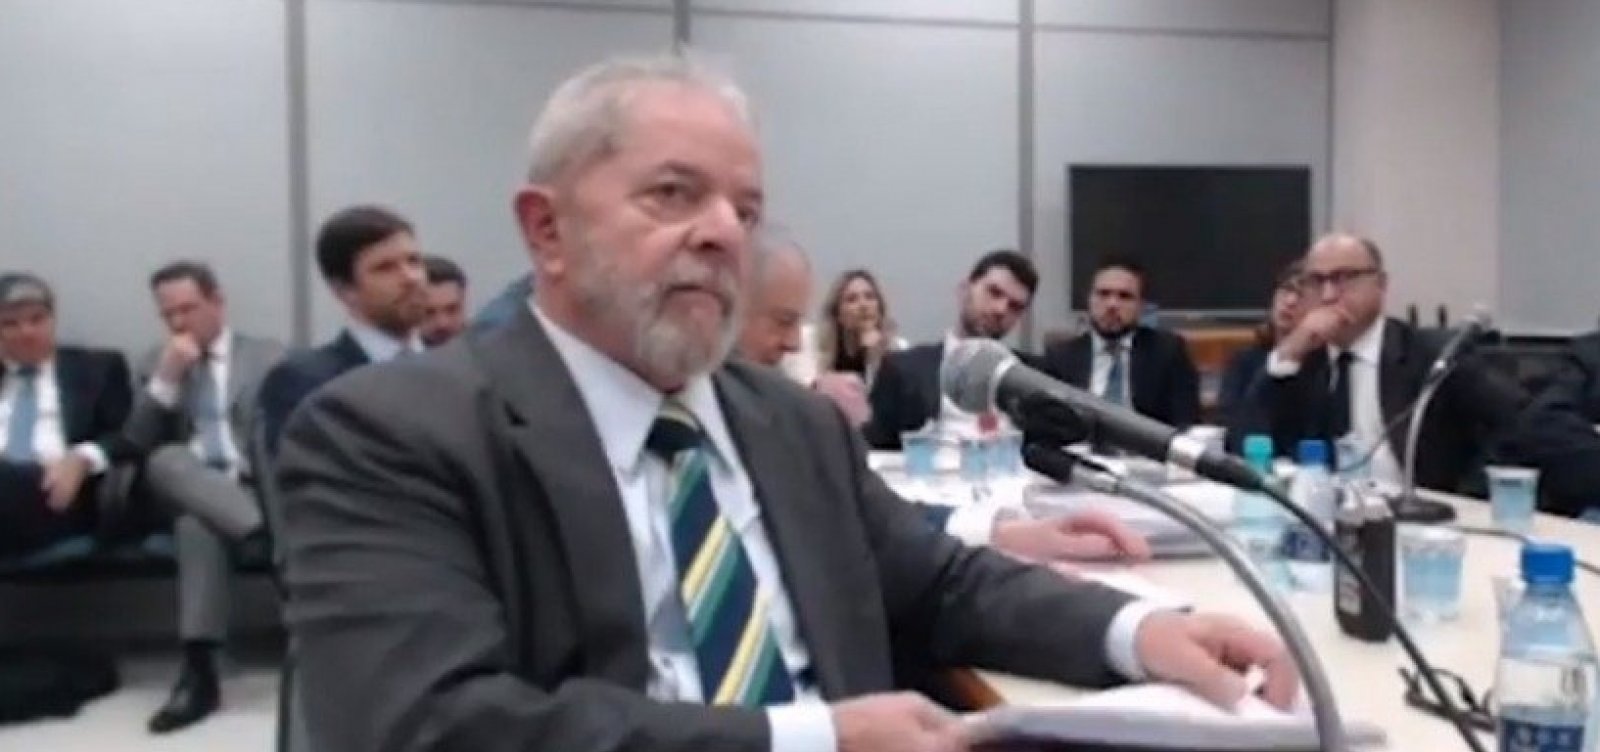 Lula e juíza discutem em audiência: ‘Se começar nesse tom, vai ter problema’, diz magistrada